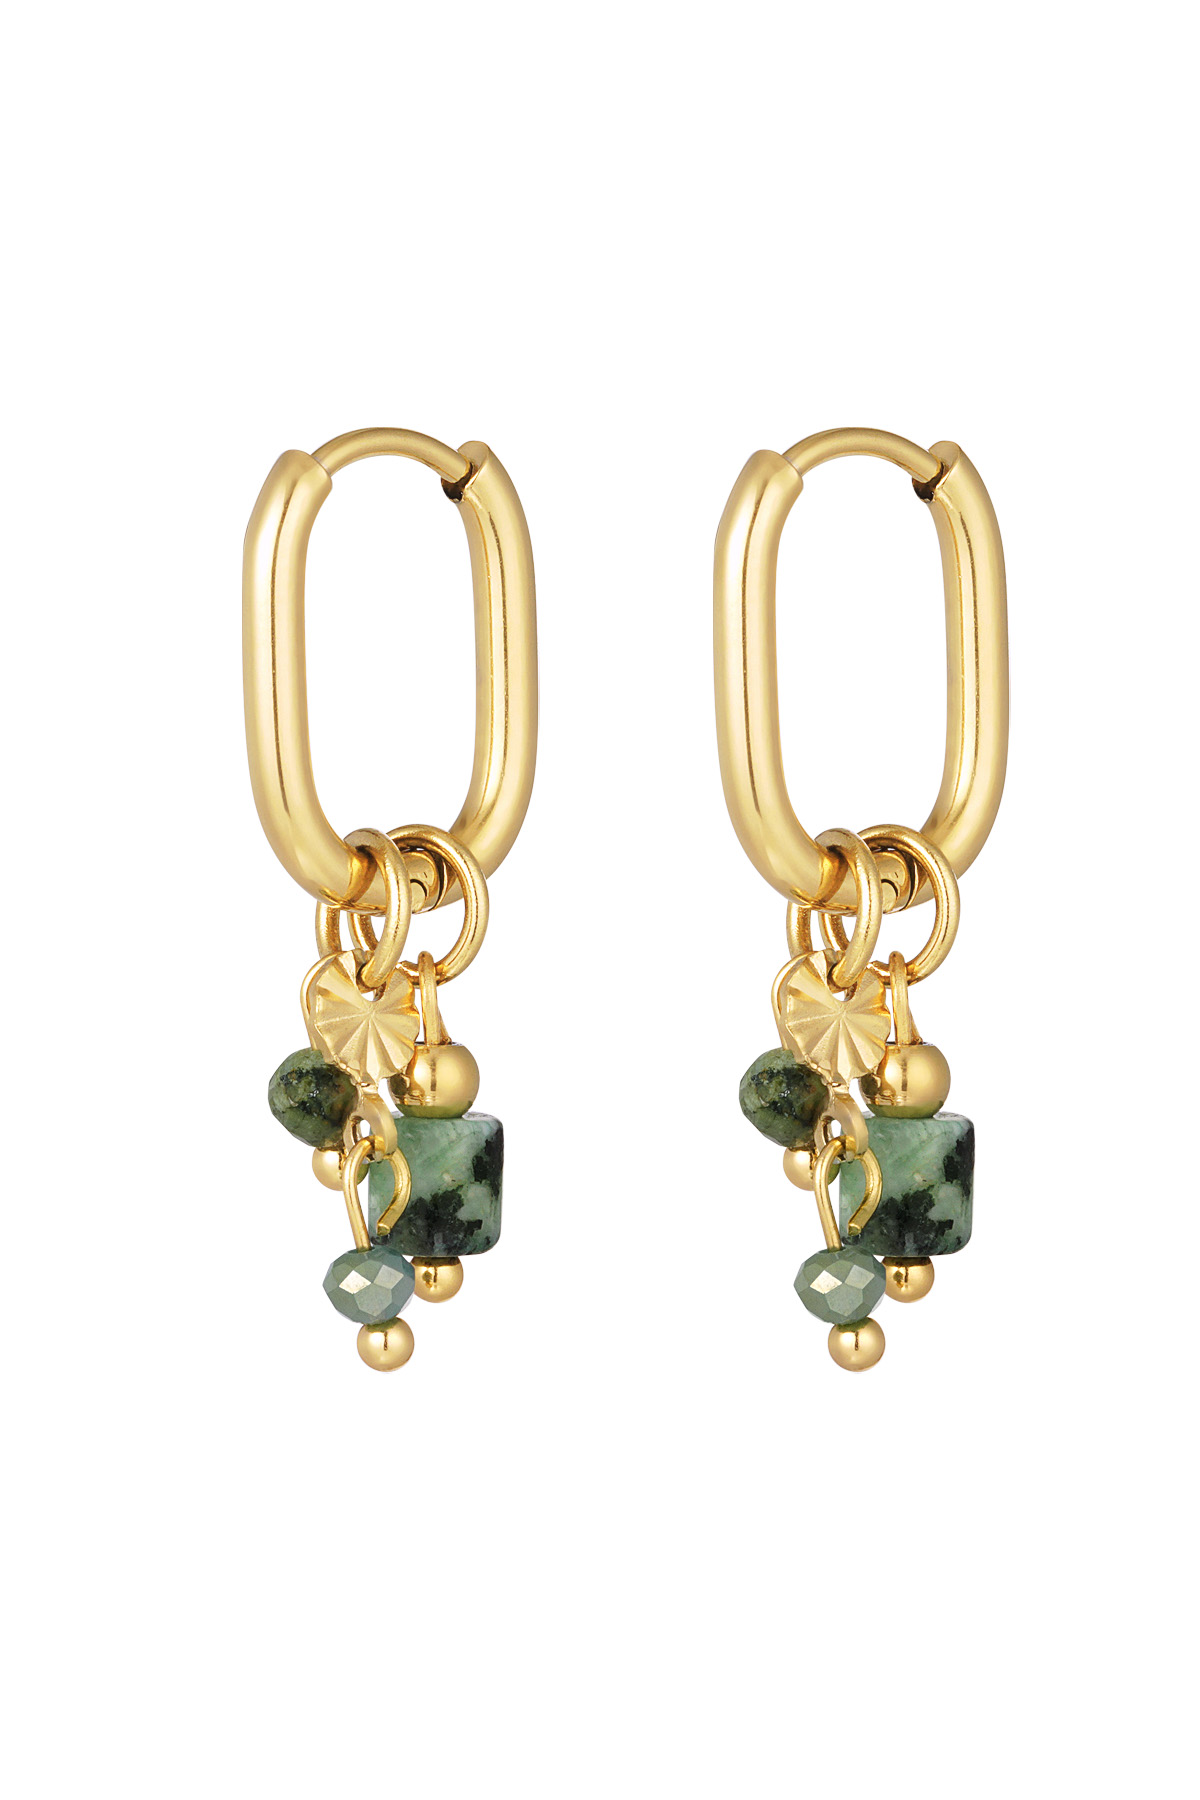 Boucle d'oreille avec perles vertes et noires - doré h5 